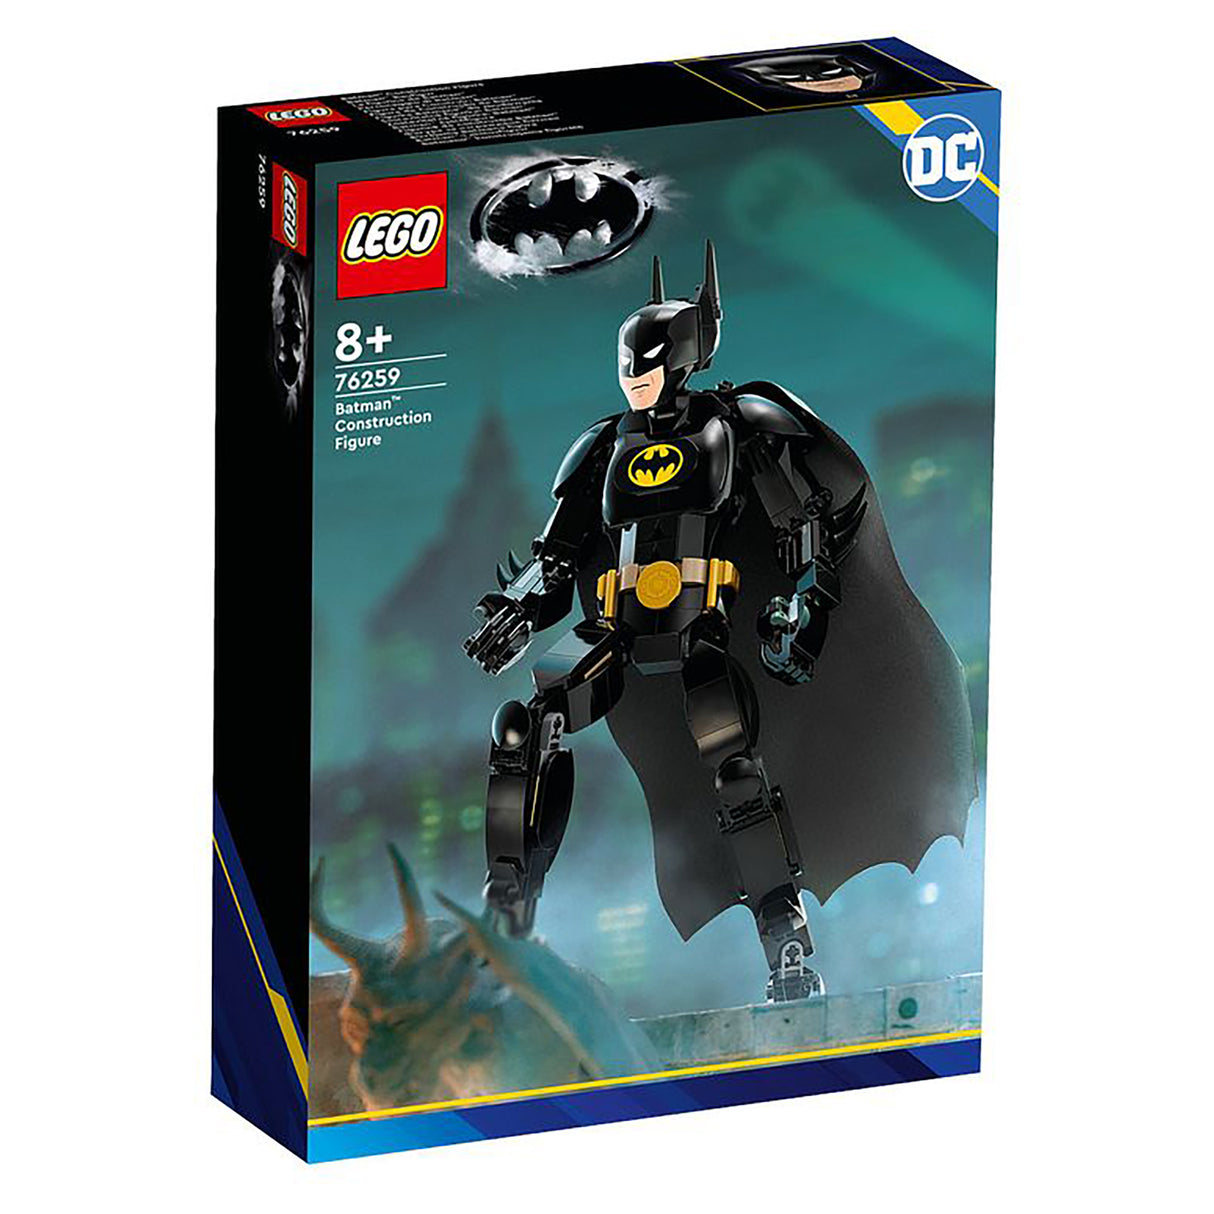 LEGO DC Batman Construction Figure 76259 (275 pieces)